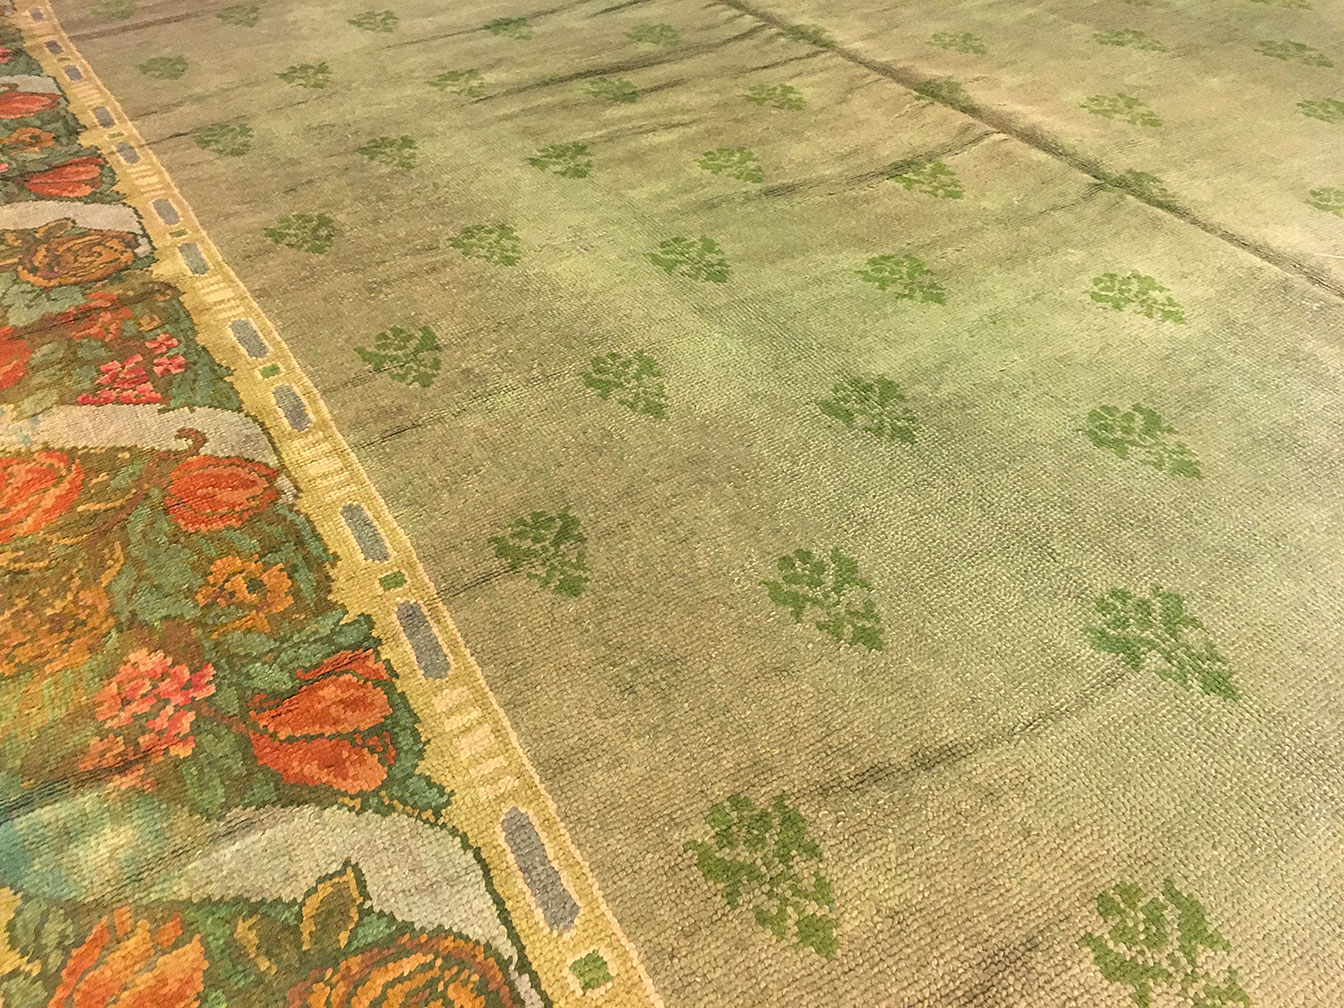 Antique donegal Carpet - # 52409